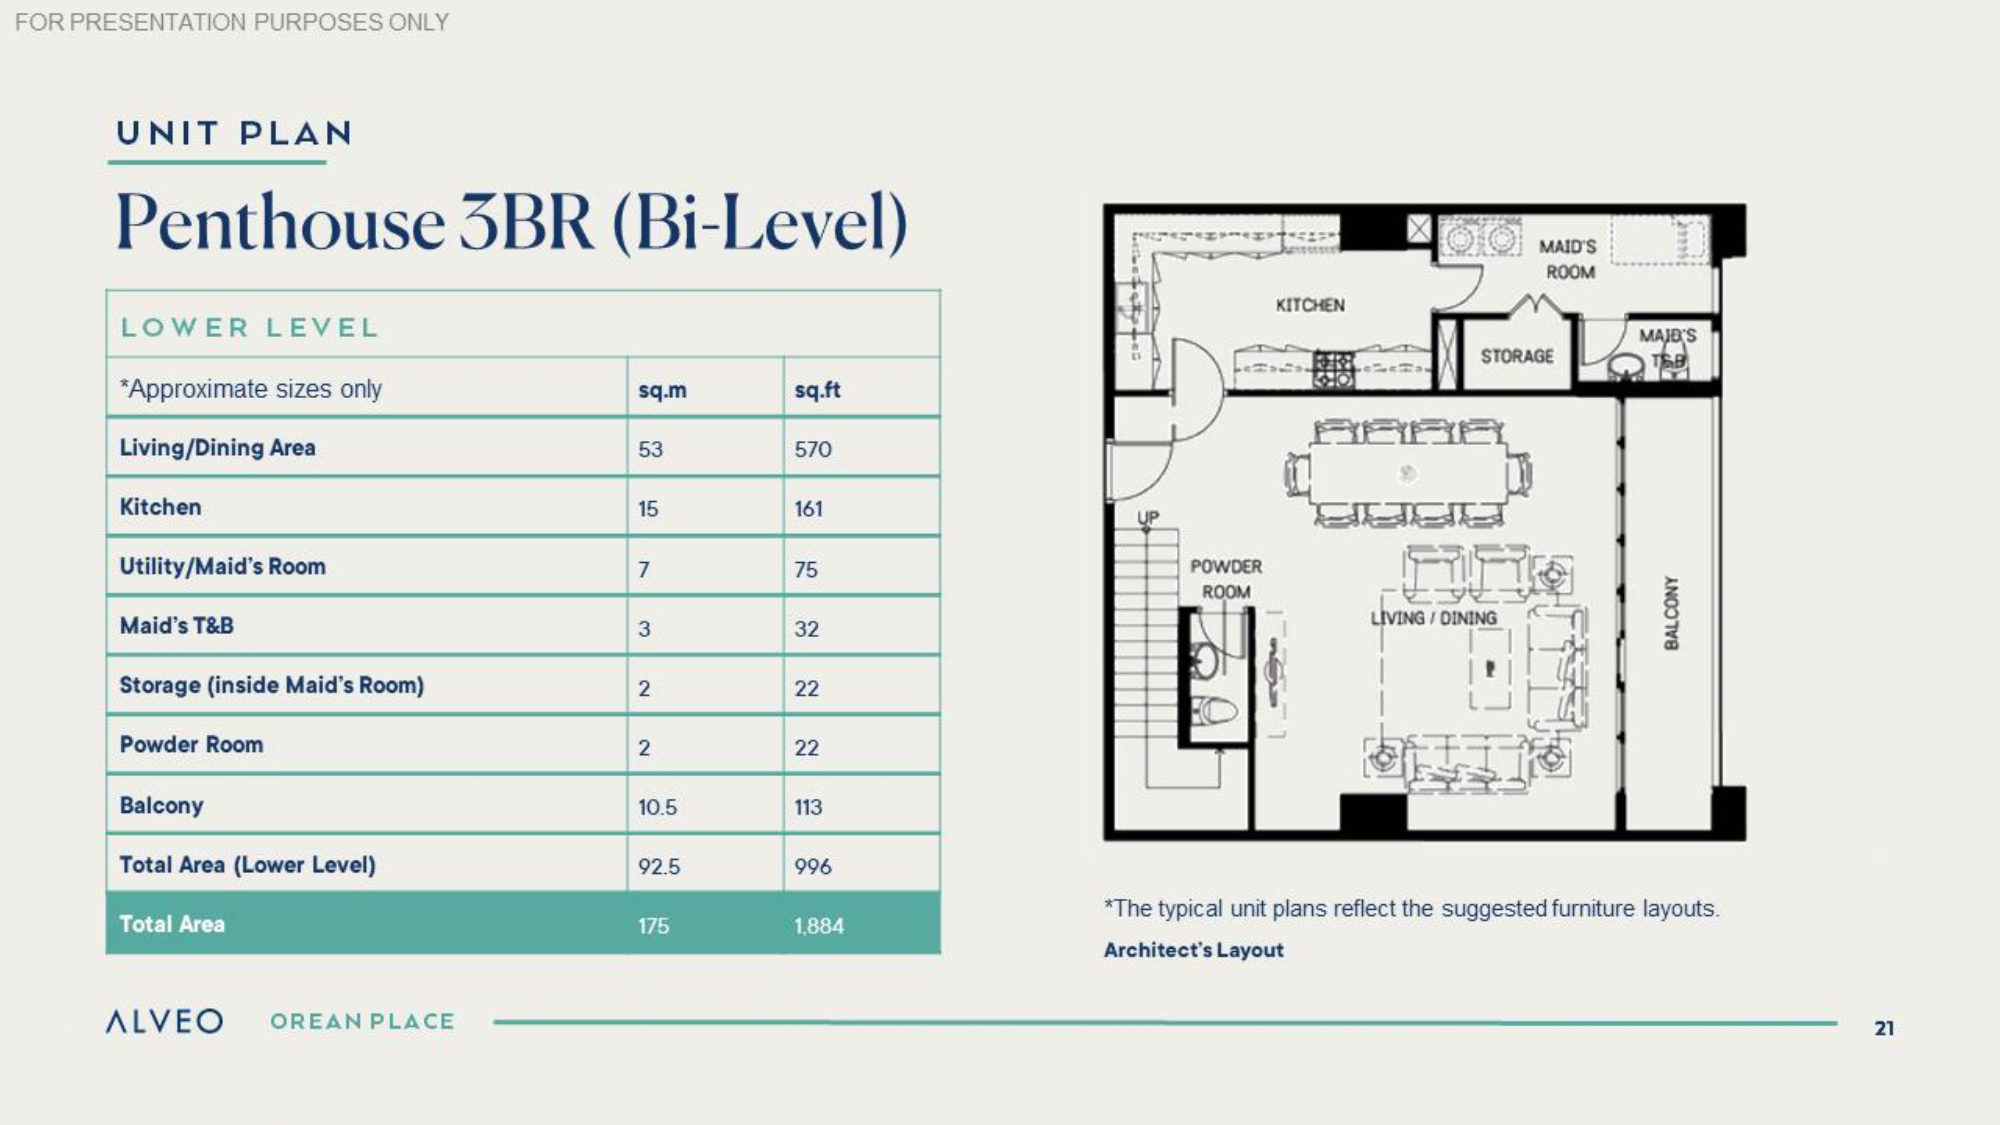 Penthouse 3BR Bi-Level